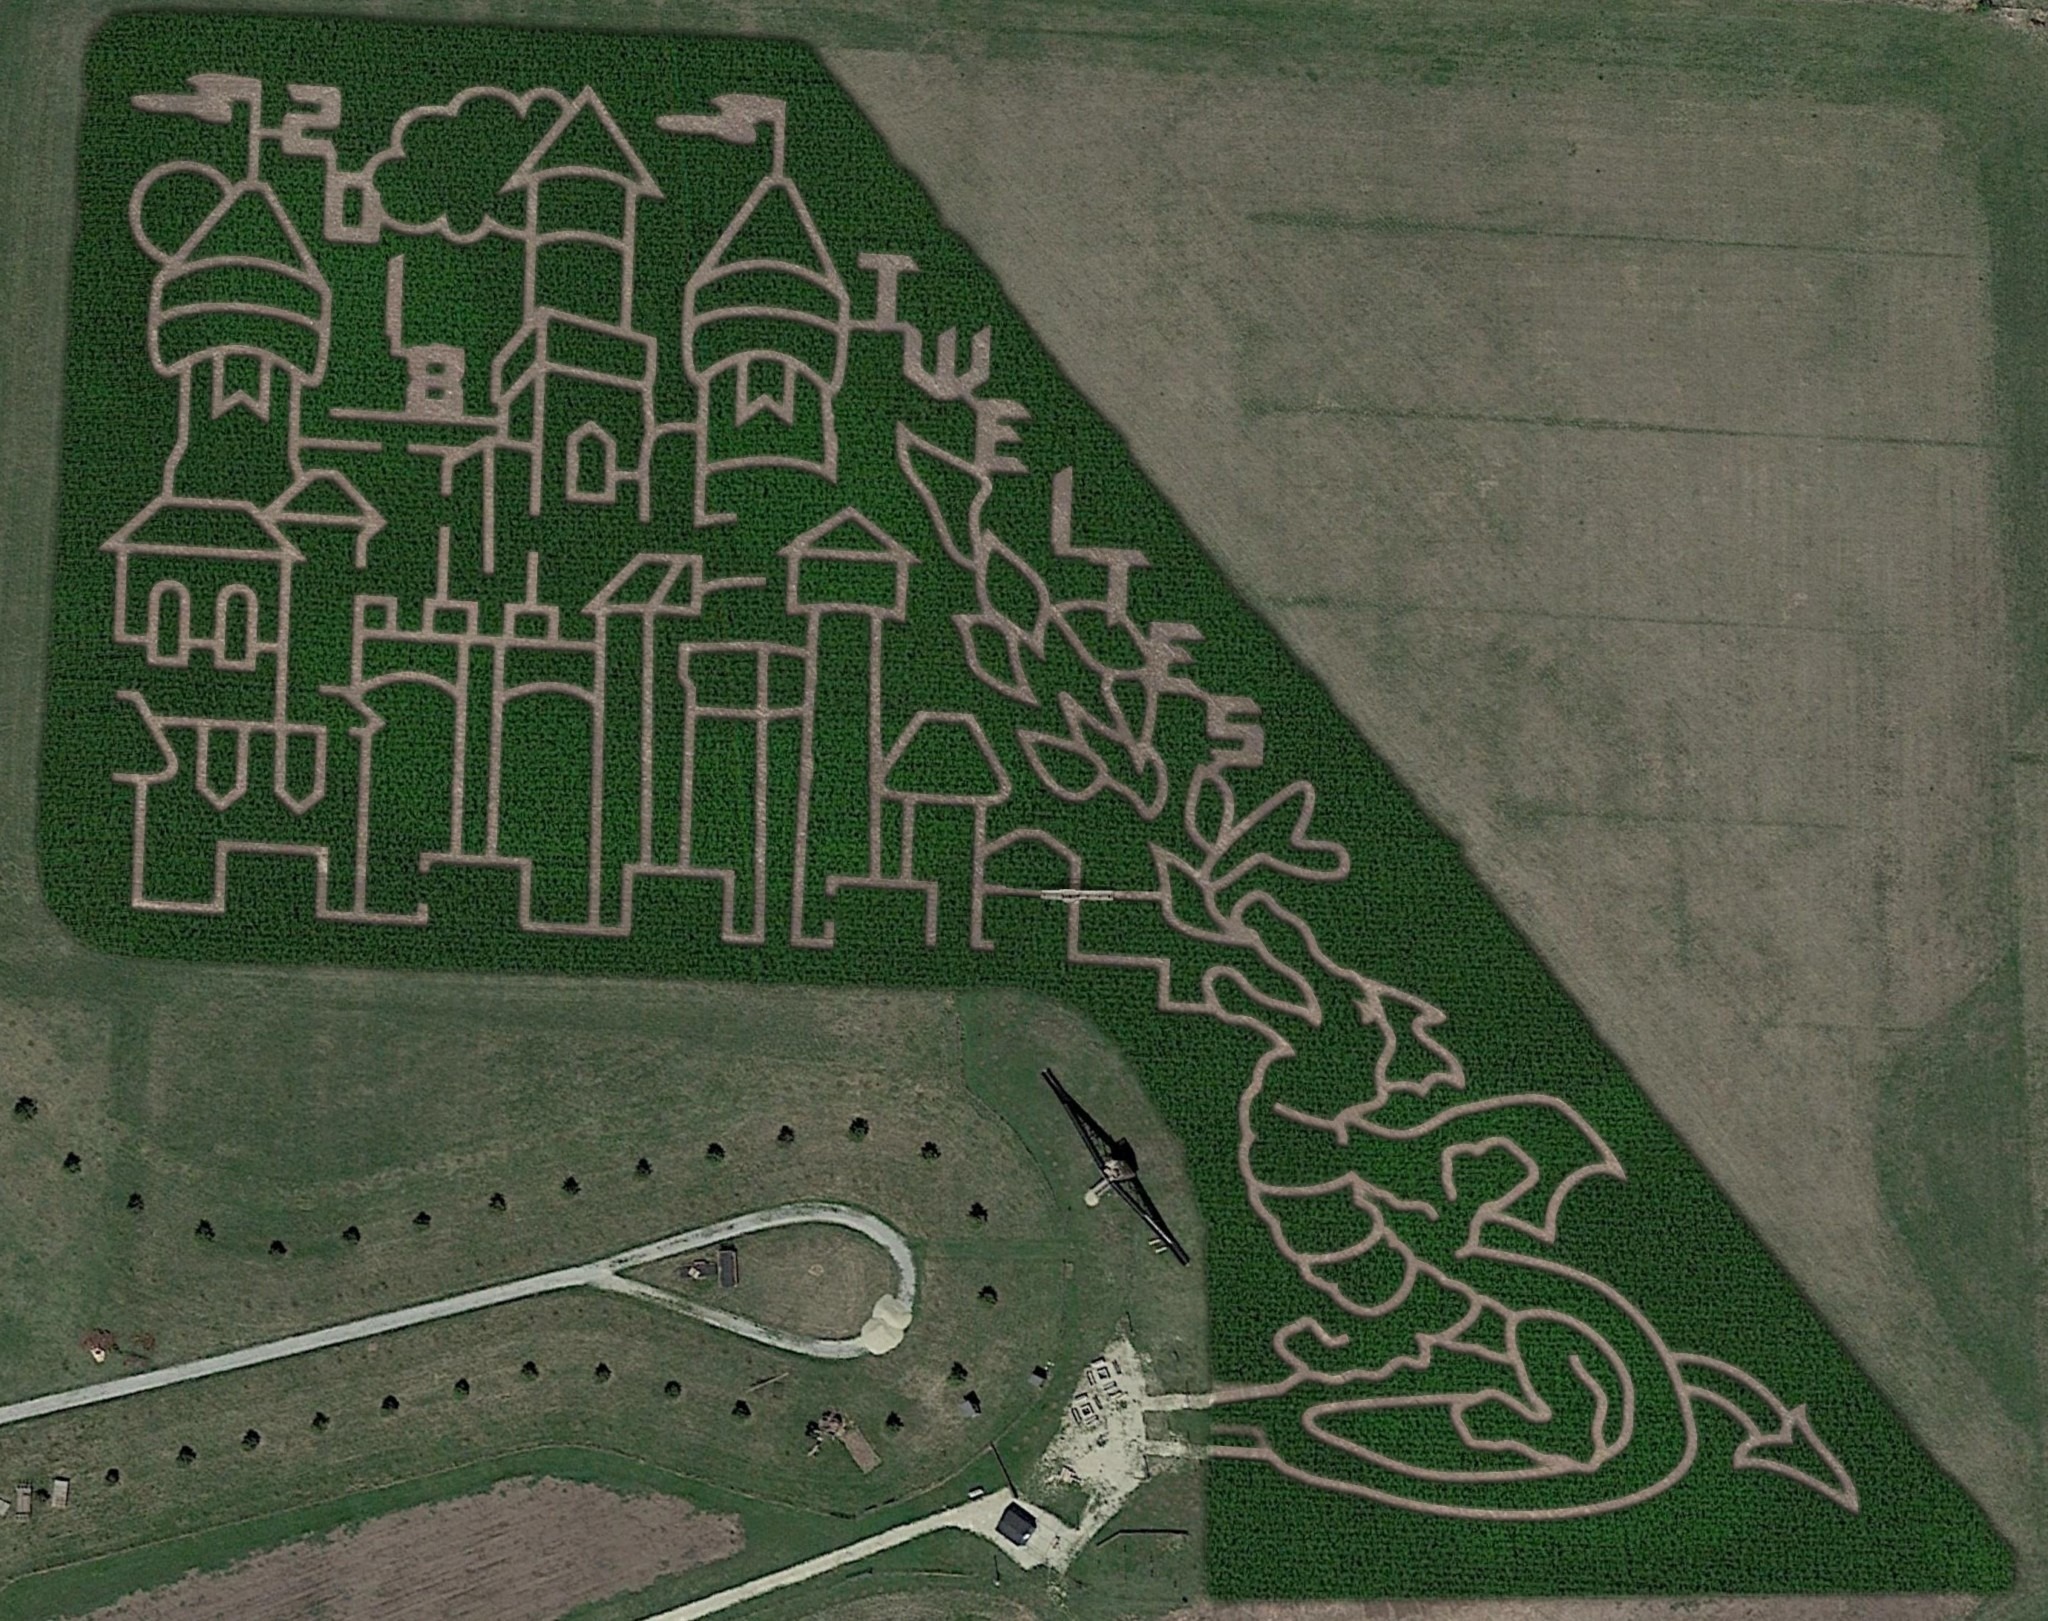 dragon castle corn maze design aerial view